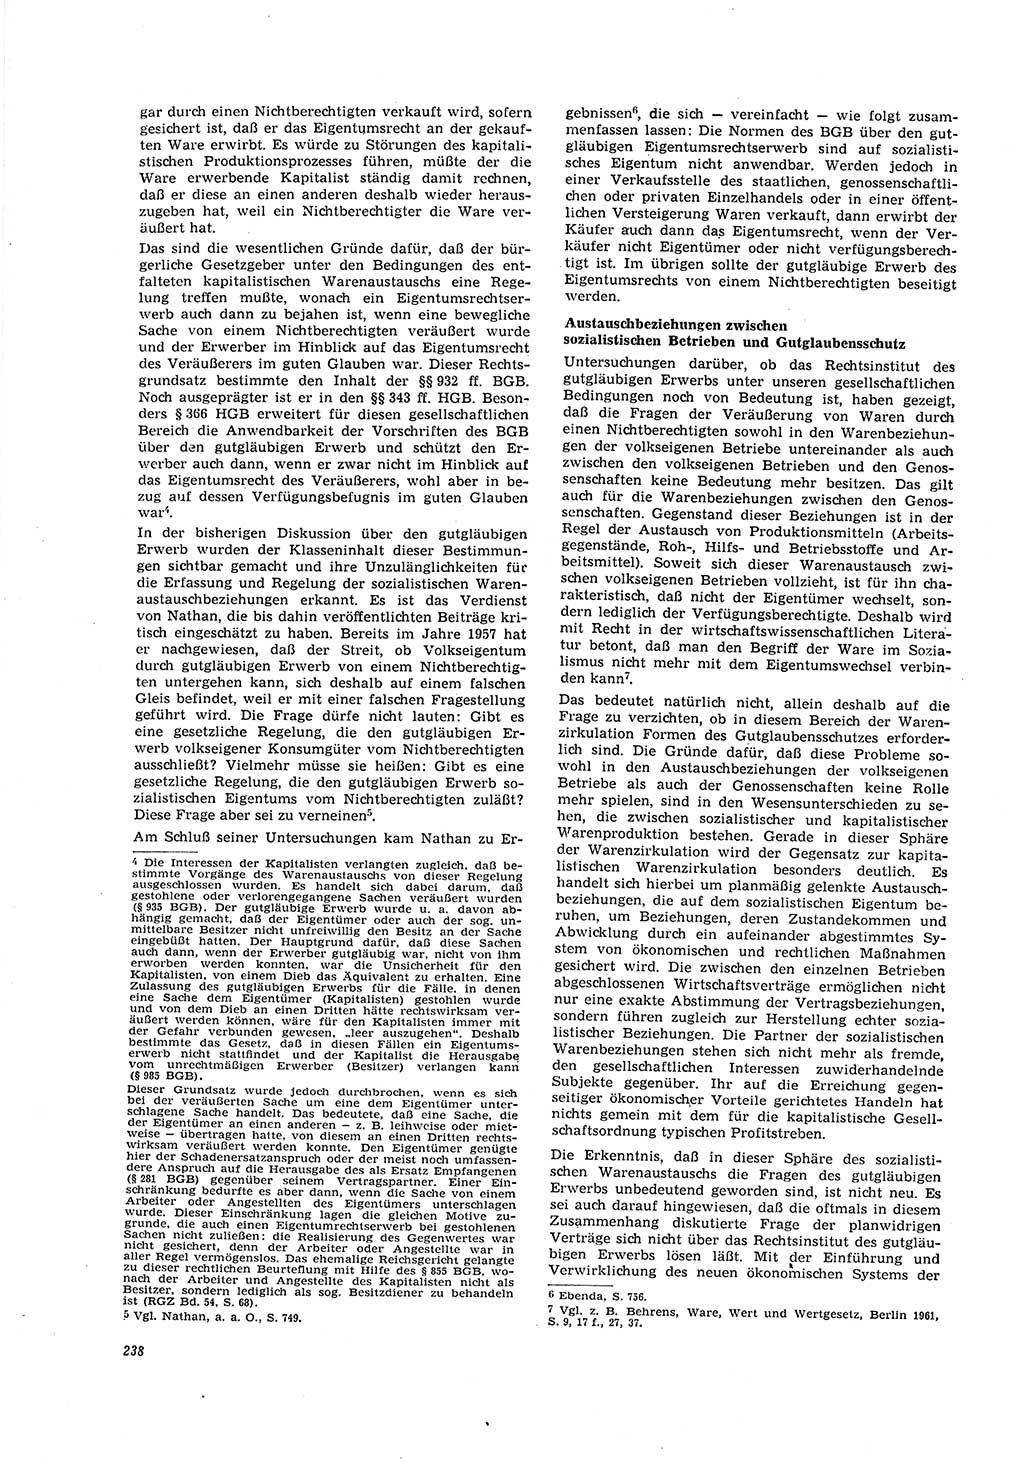 Neue Justiz (NJ), Zeitschrift für Recht und Rechtswissenschaft [Deutsche Demokratische Republik (DDR)], 20. Jahrgang 1966, Seite 238 (NJ DDR 1966, S. 238)